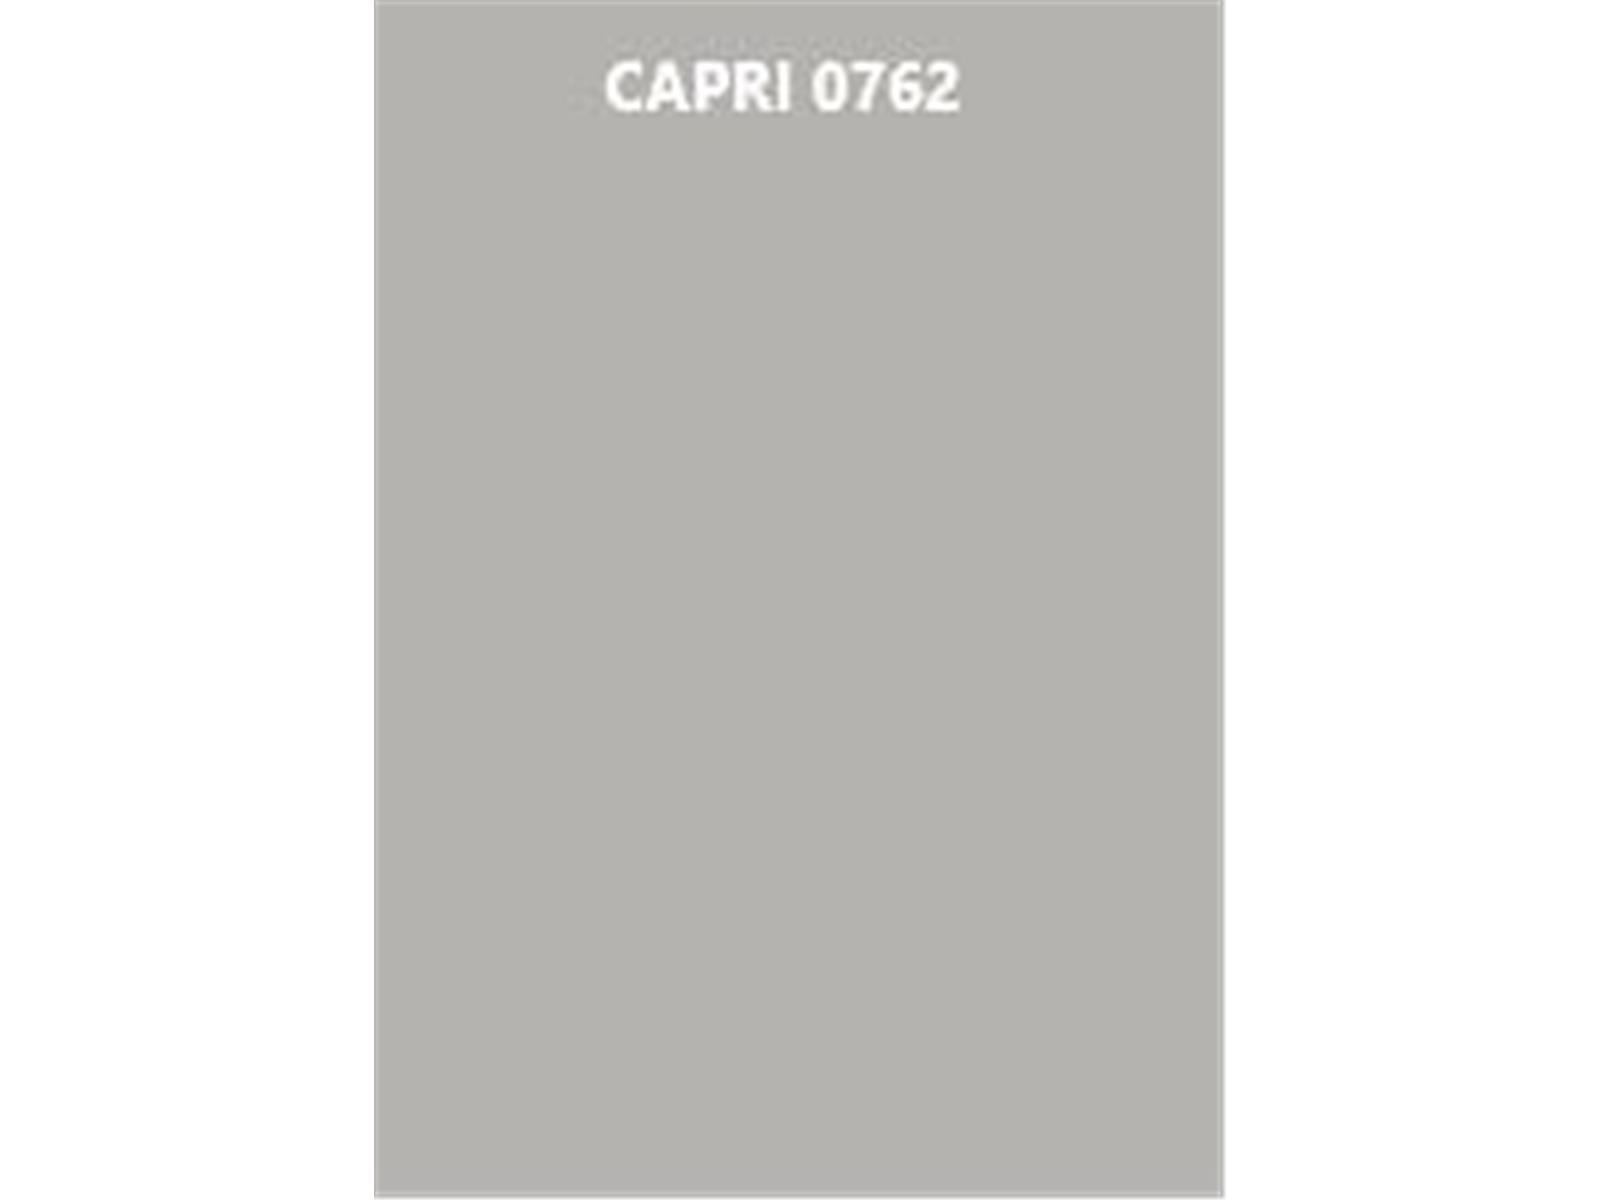 Jotun DEMIDEKK ULTIMATE Täckfärg Holzschutzfarbe 3 L CAPRI 0762